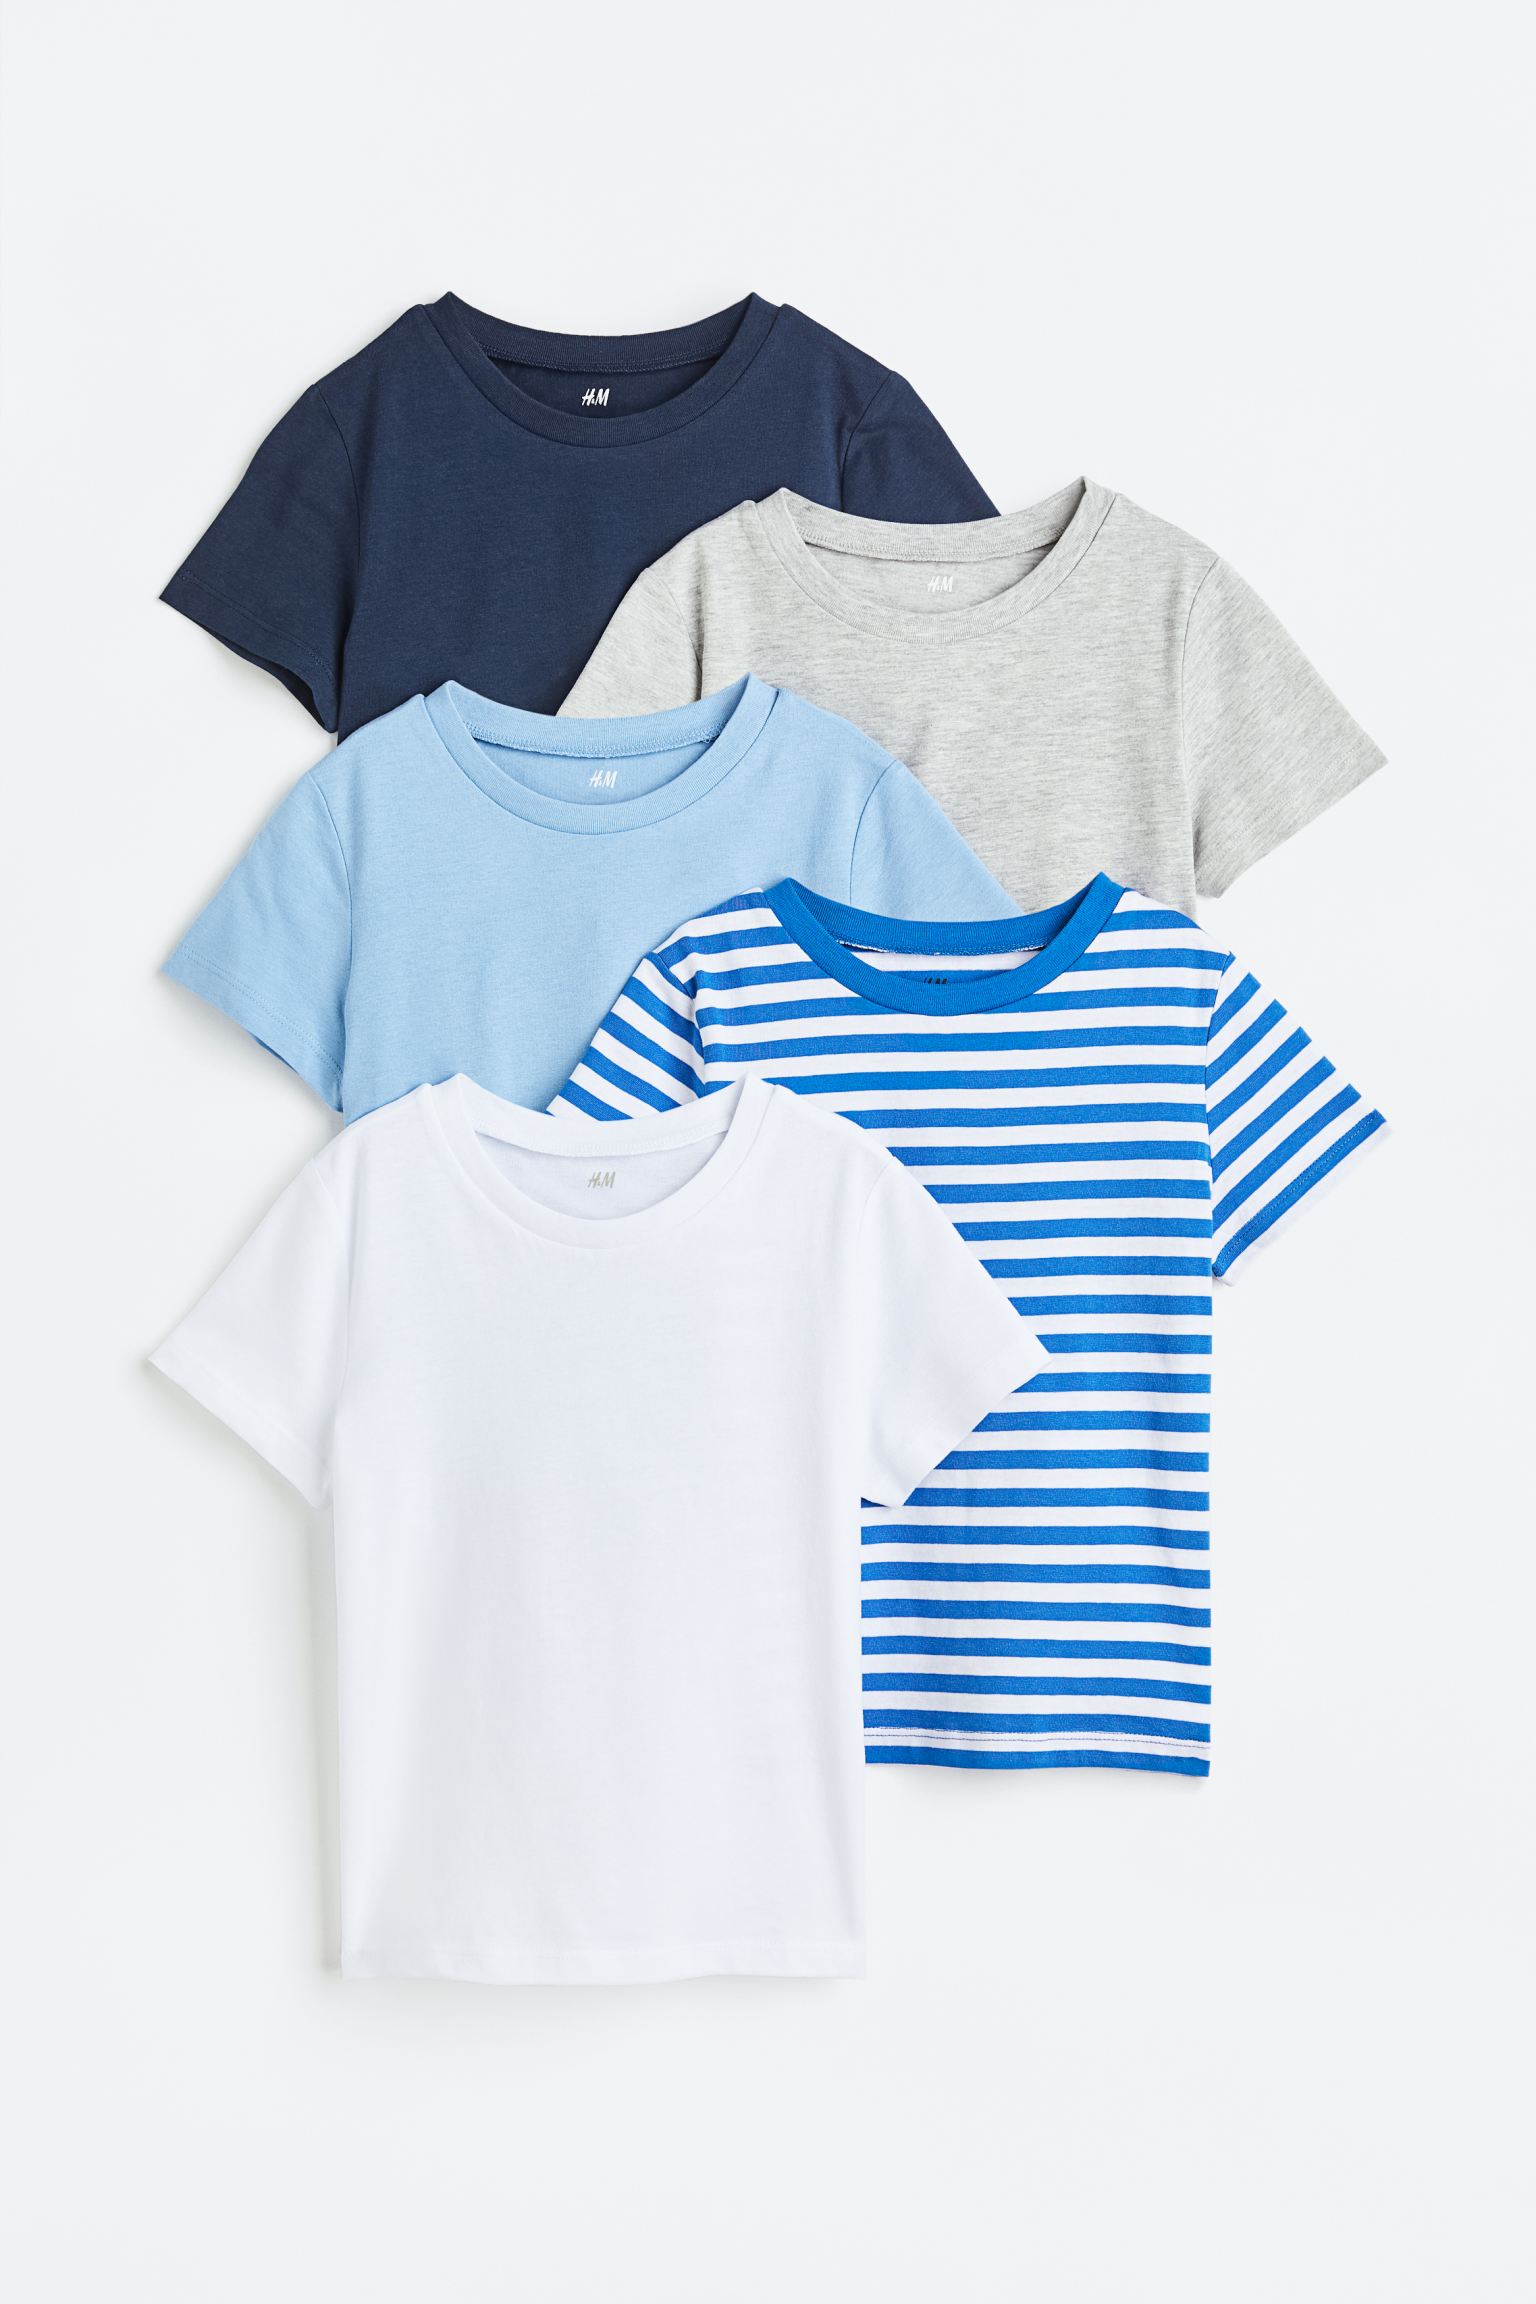 Хлопковая футболка, 5 шт. H&M, темно-синий/серый меланж